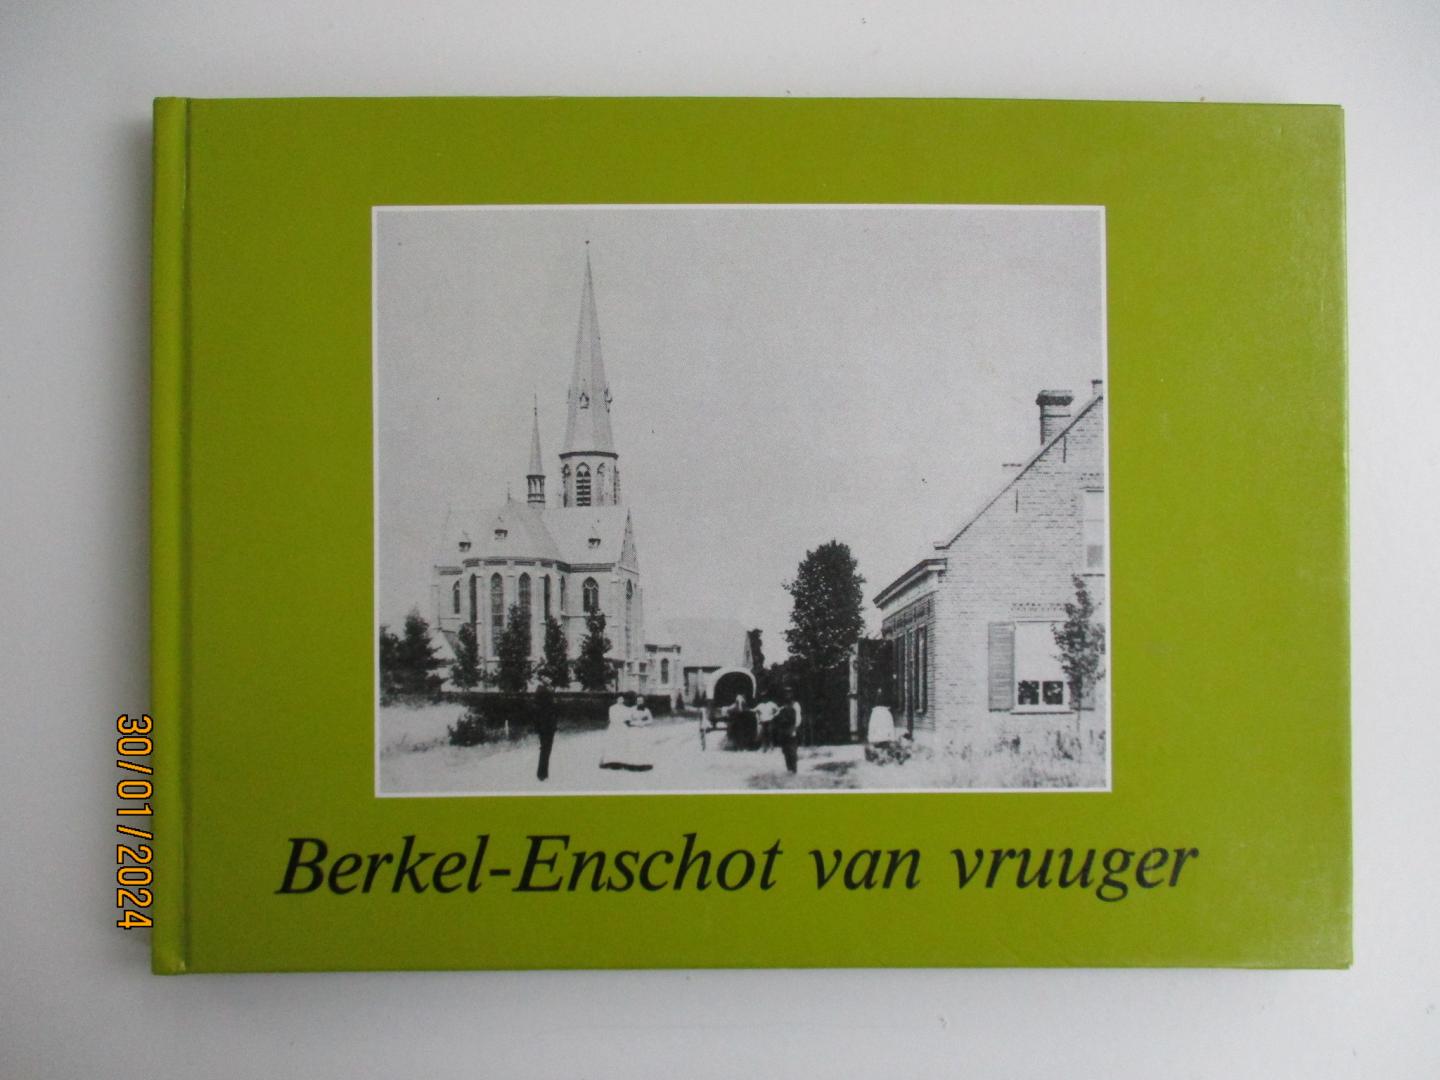 Dorp, Anton van - Berkel-enschot van vruuger